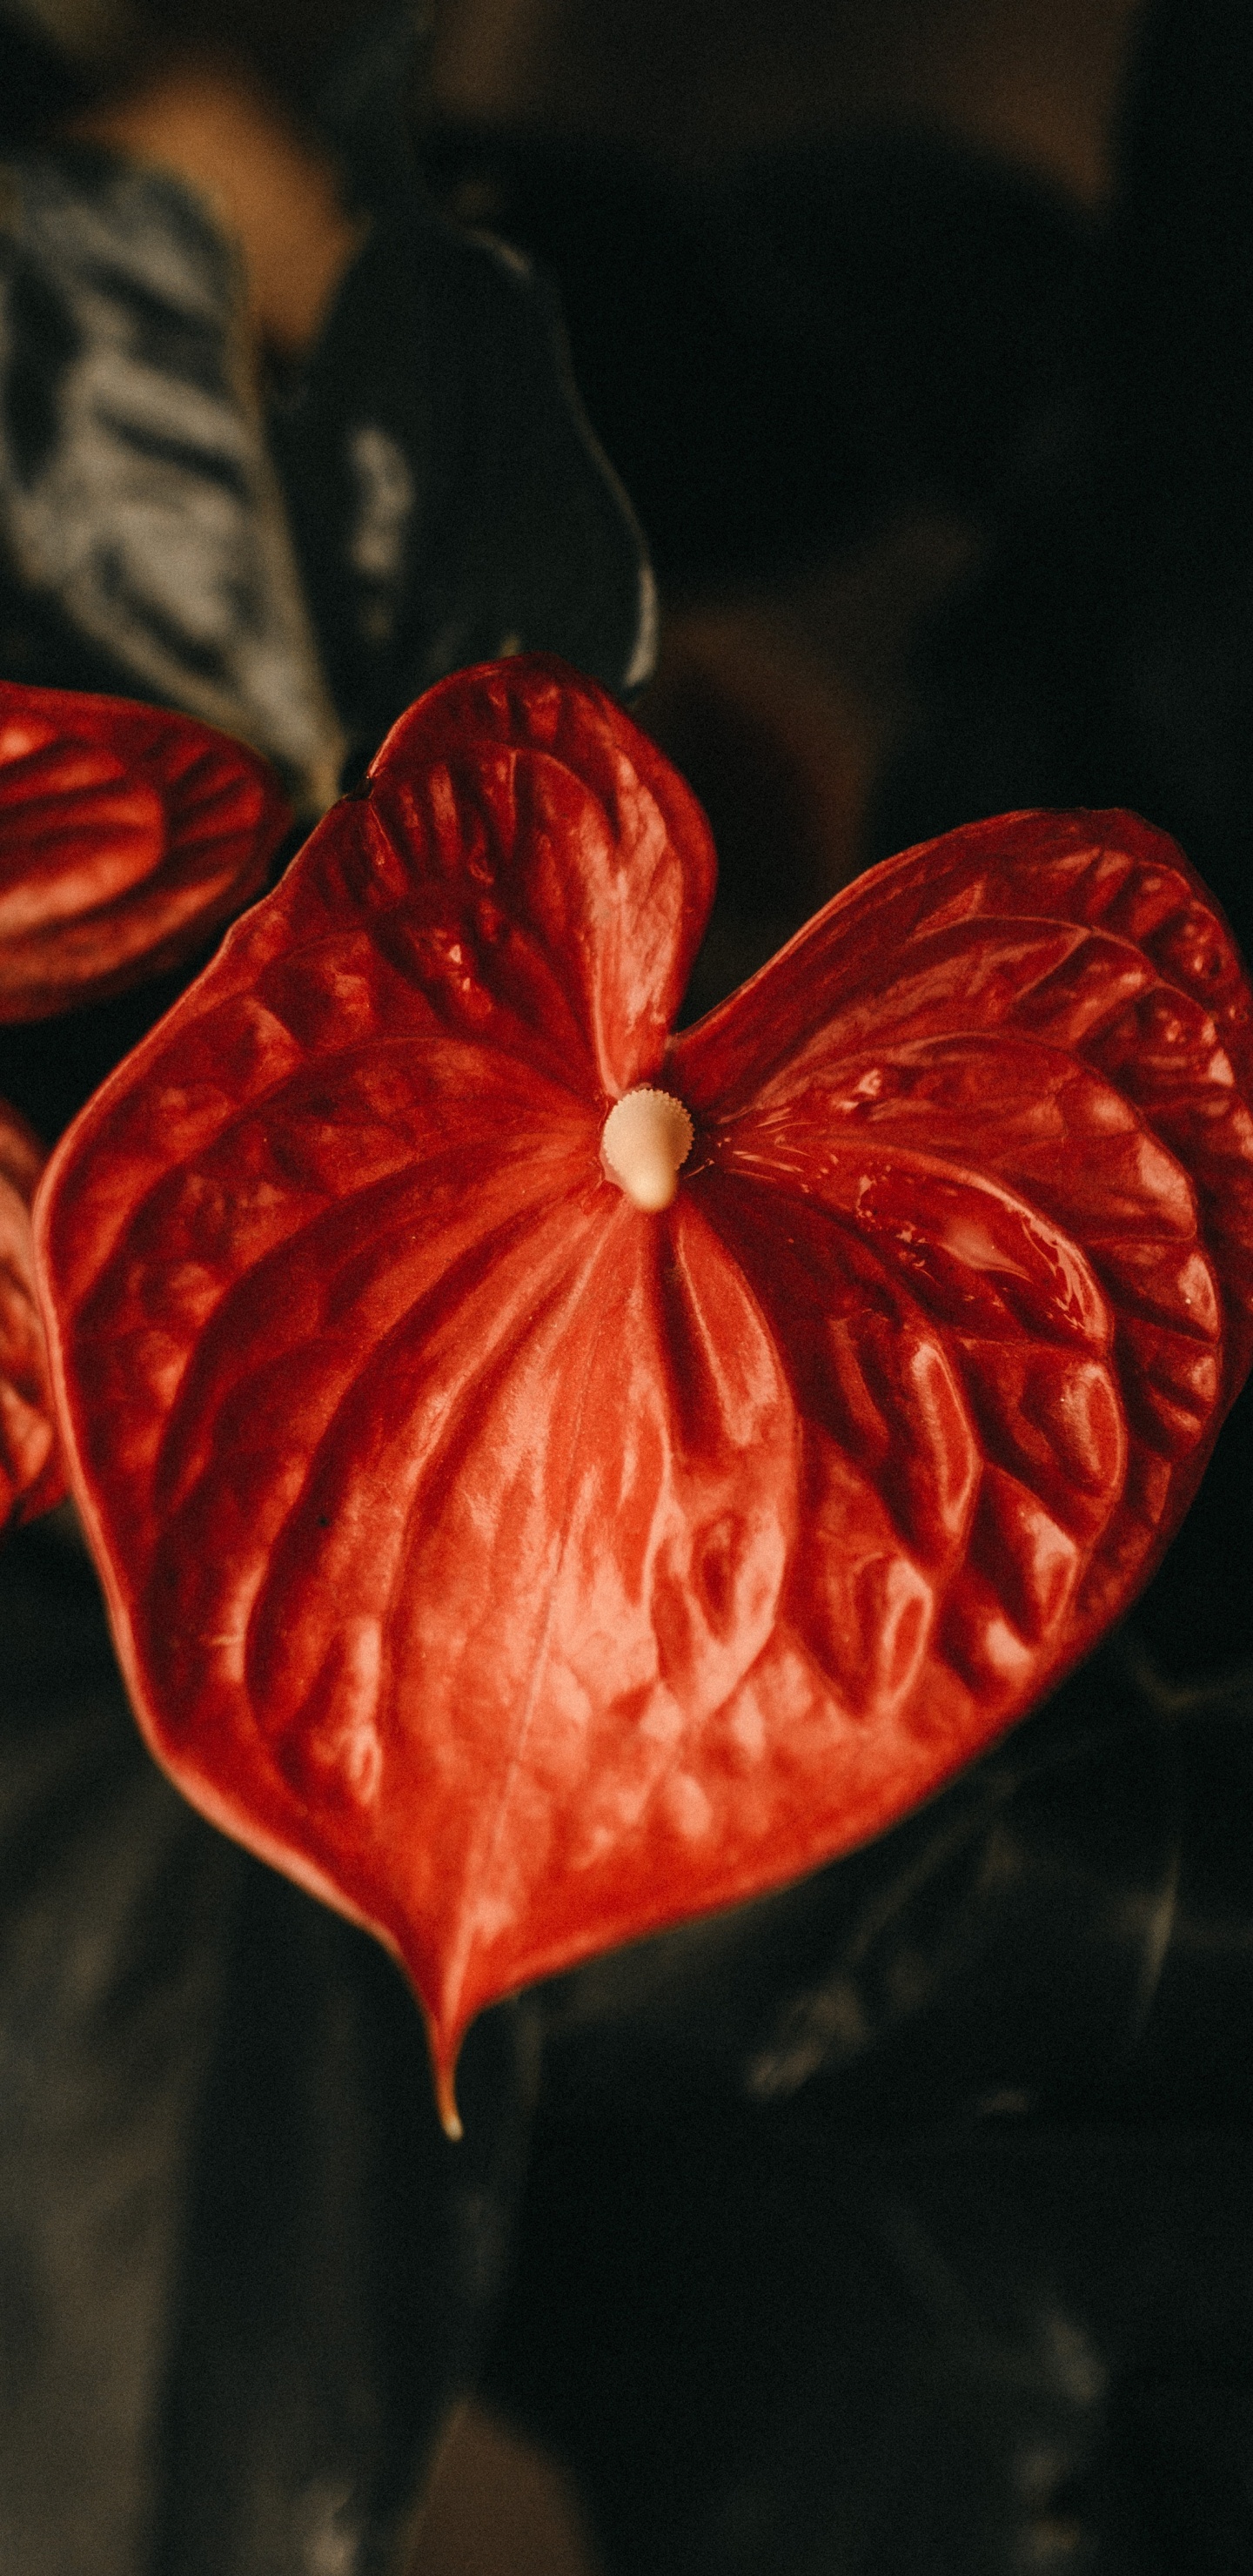 Rote Blume Mit 5 Blütenblättern in Nahaufnahme. Wallpaper in 1440x2960 Resolution